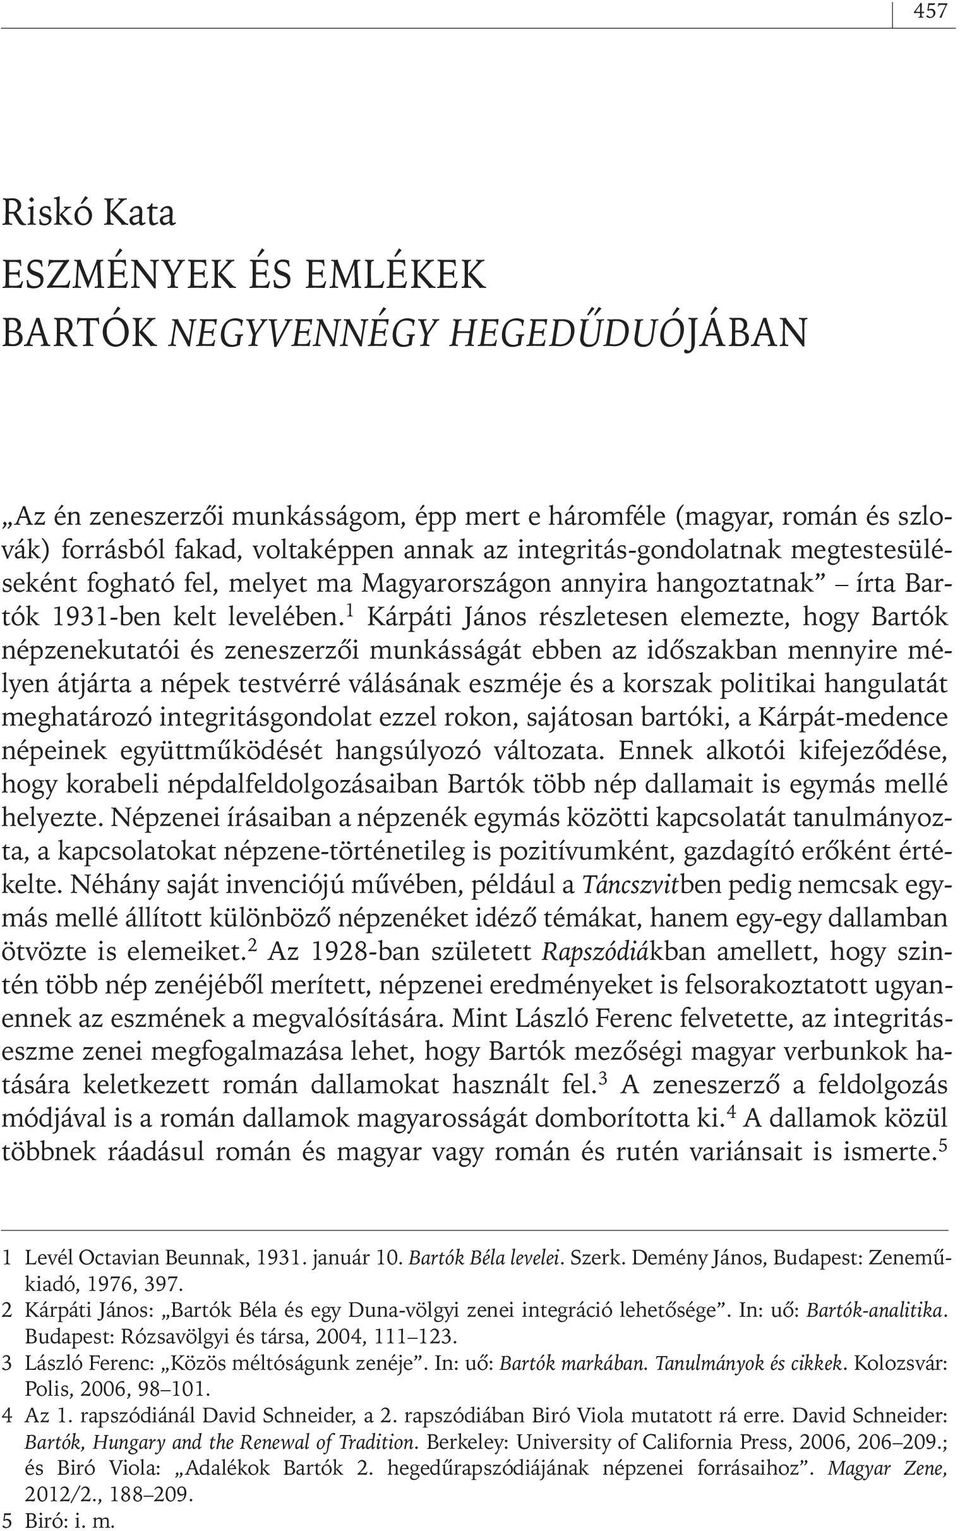 1 Kárpáti János részletesen elemezte, hogy Bartók népzenekutatói és zeneszerzôi munkásságát ebben az idôszakban mennyire mélyen átjárta a népek testvérré válásának eszméje és a korszak politikai